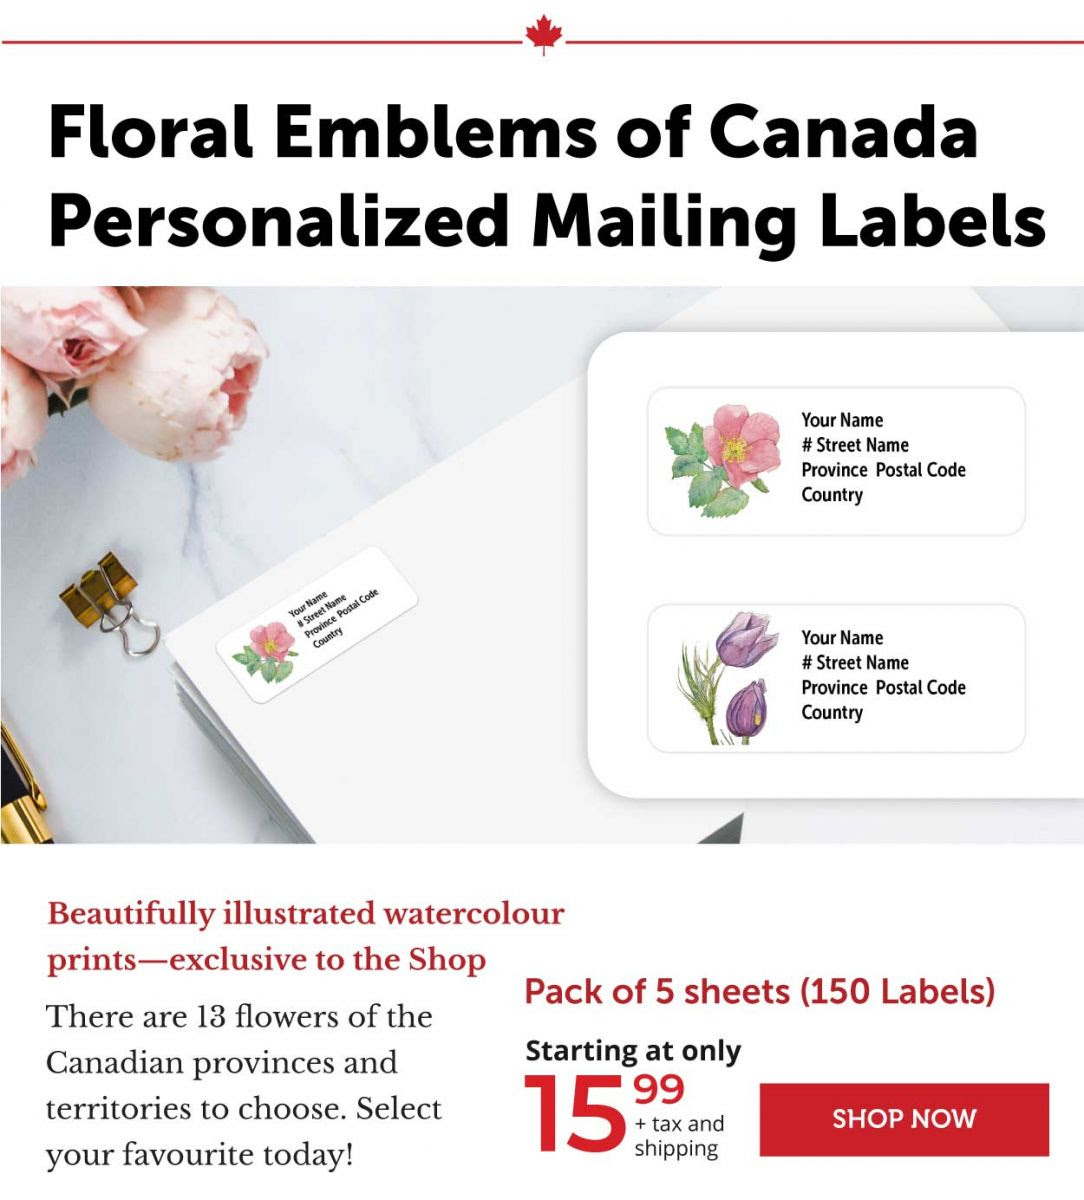 Floral Emblems - Mailing Labels